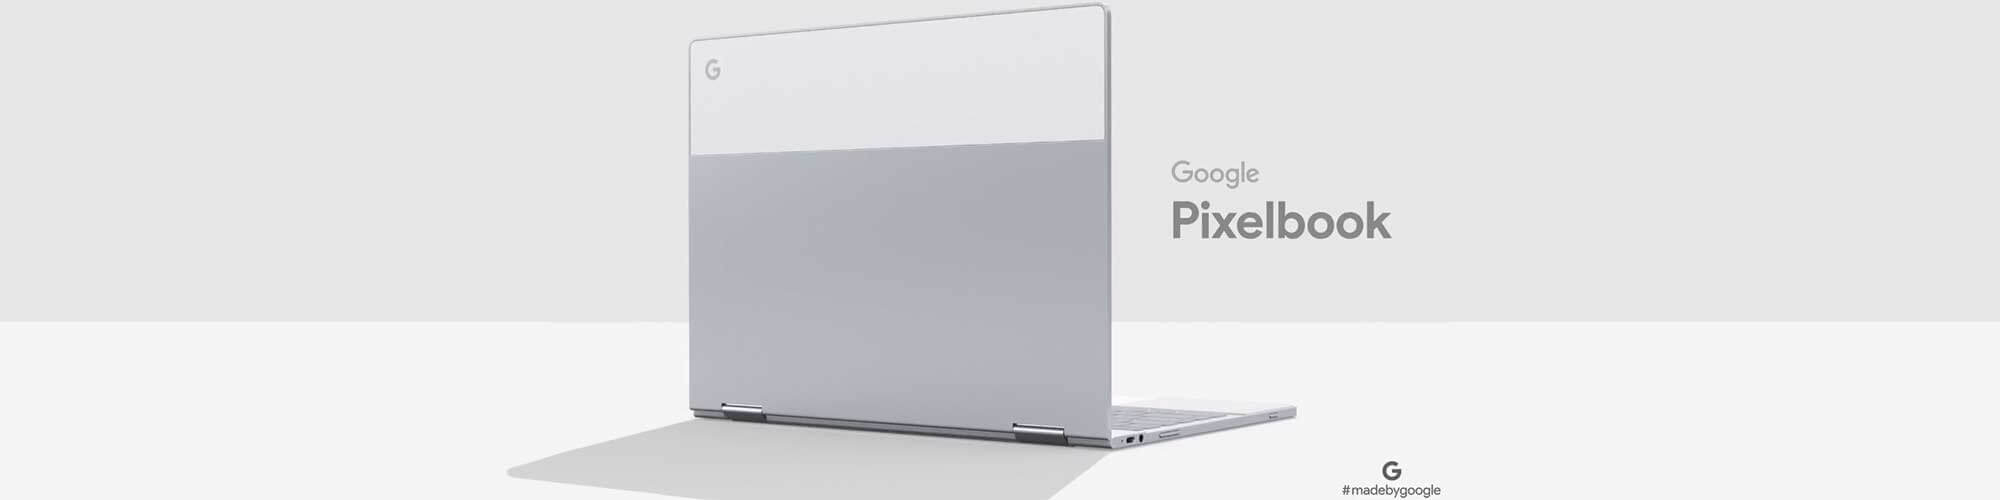  Google     Pixelbook    Pixel 3!